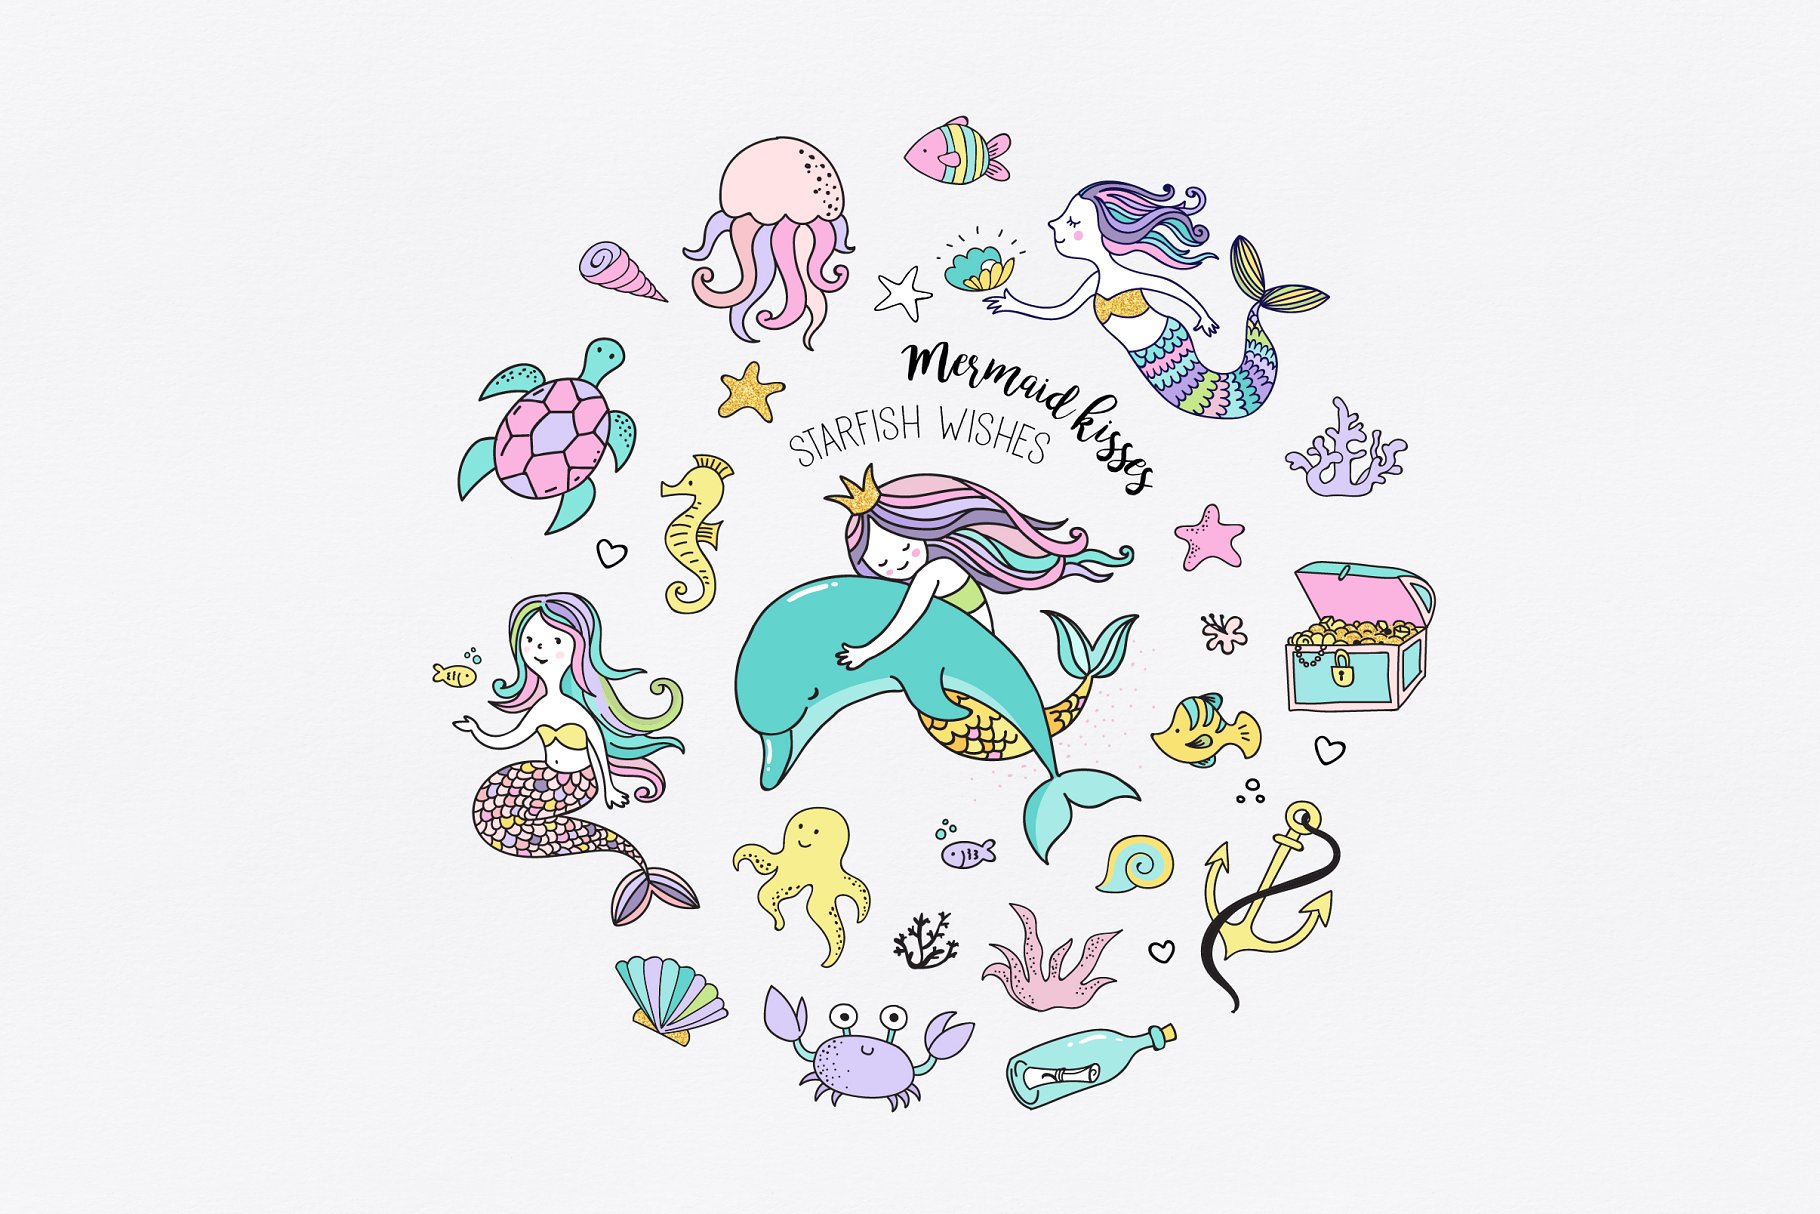 小美人鱼与海洋生物元素及贺卡模板 Little Mermaid – under the sea set插图(3)